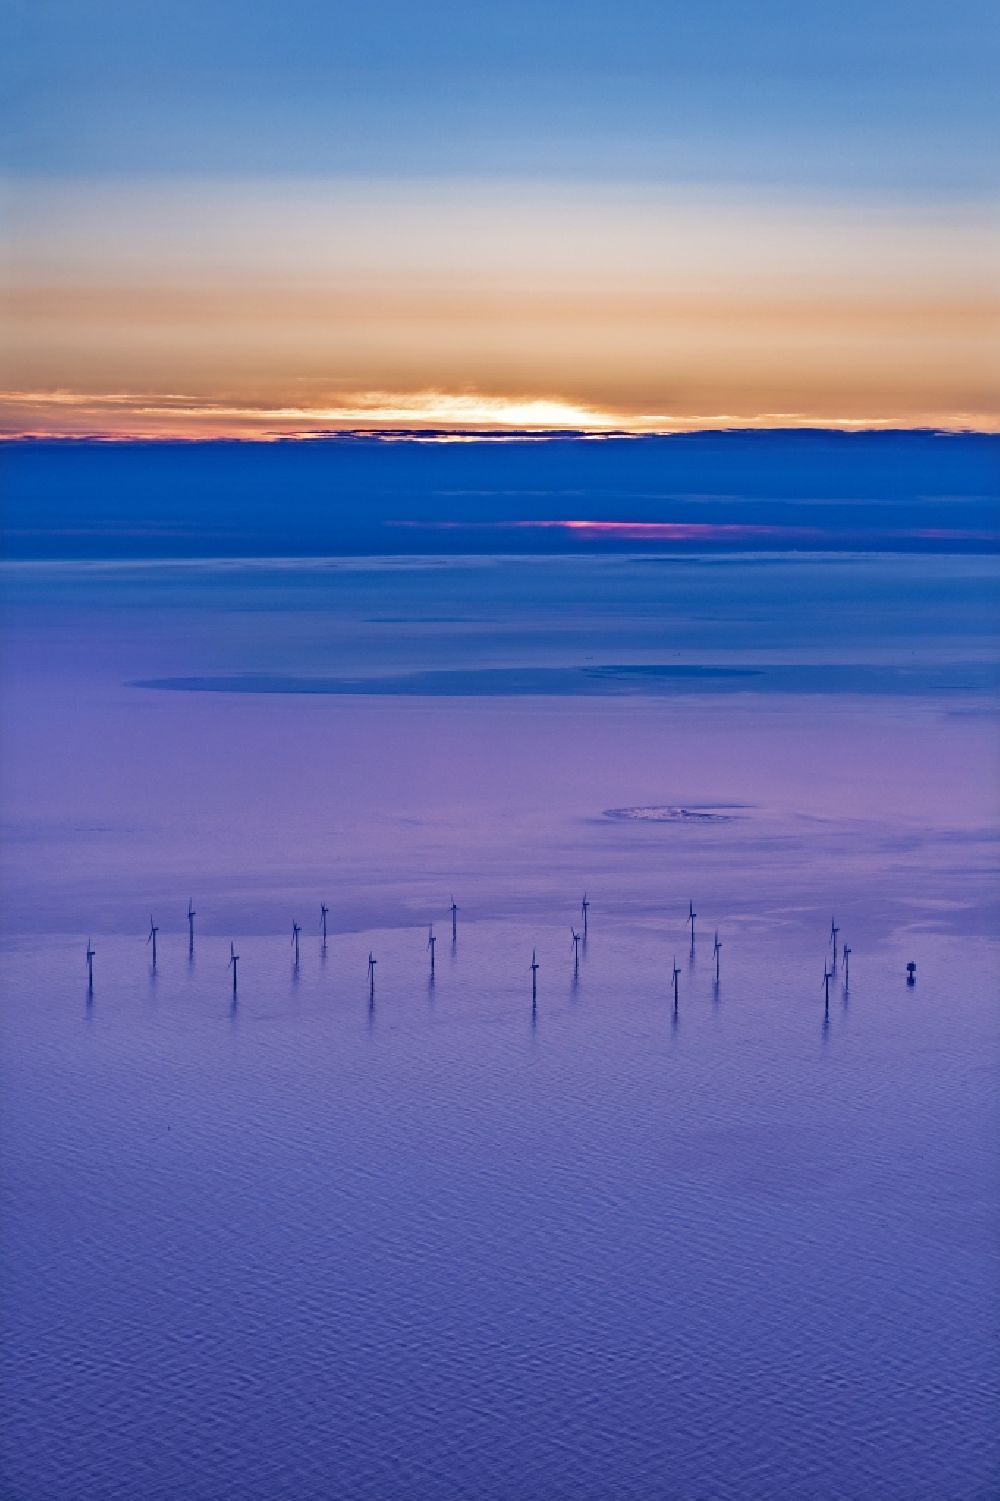 Nordergründe von oben - Windenergieanlagen (WEA) des Offshore-Windpark auf der Wasseroberfläche der Nordsee in Nordergründe im Bundesland Niedersachsen, Deutschland